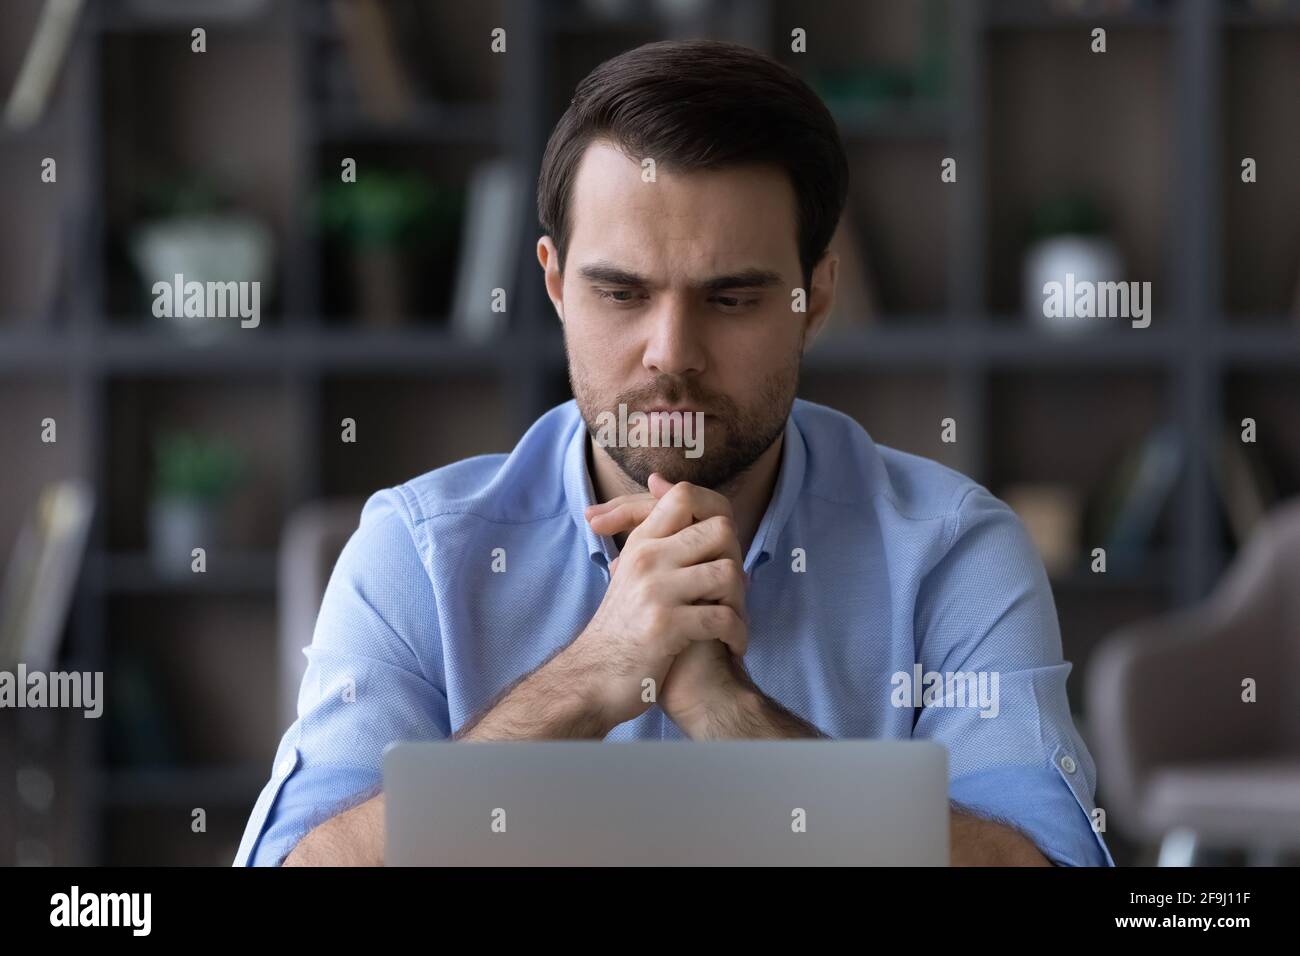 Un homme pensif travaille sur un ordinateur portable en pensant au problème Banque D'Images